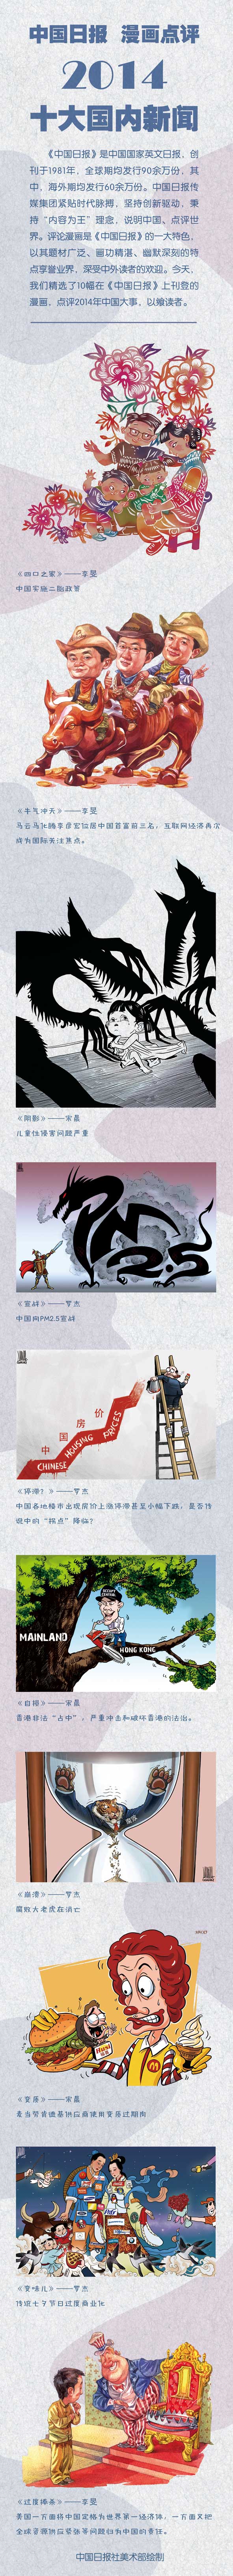 中国日报 漫画点评——2014十大国内新闻